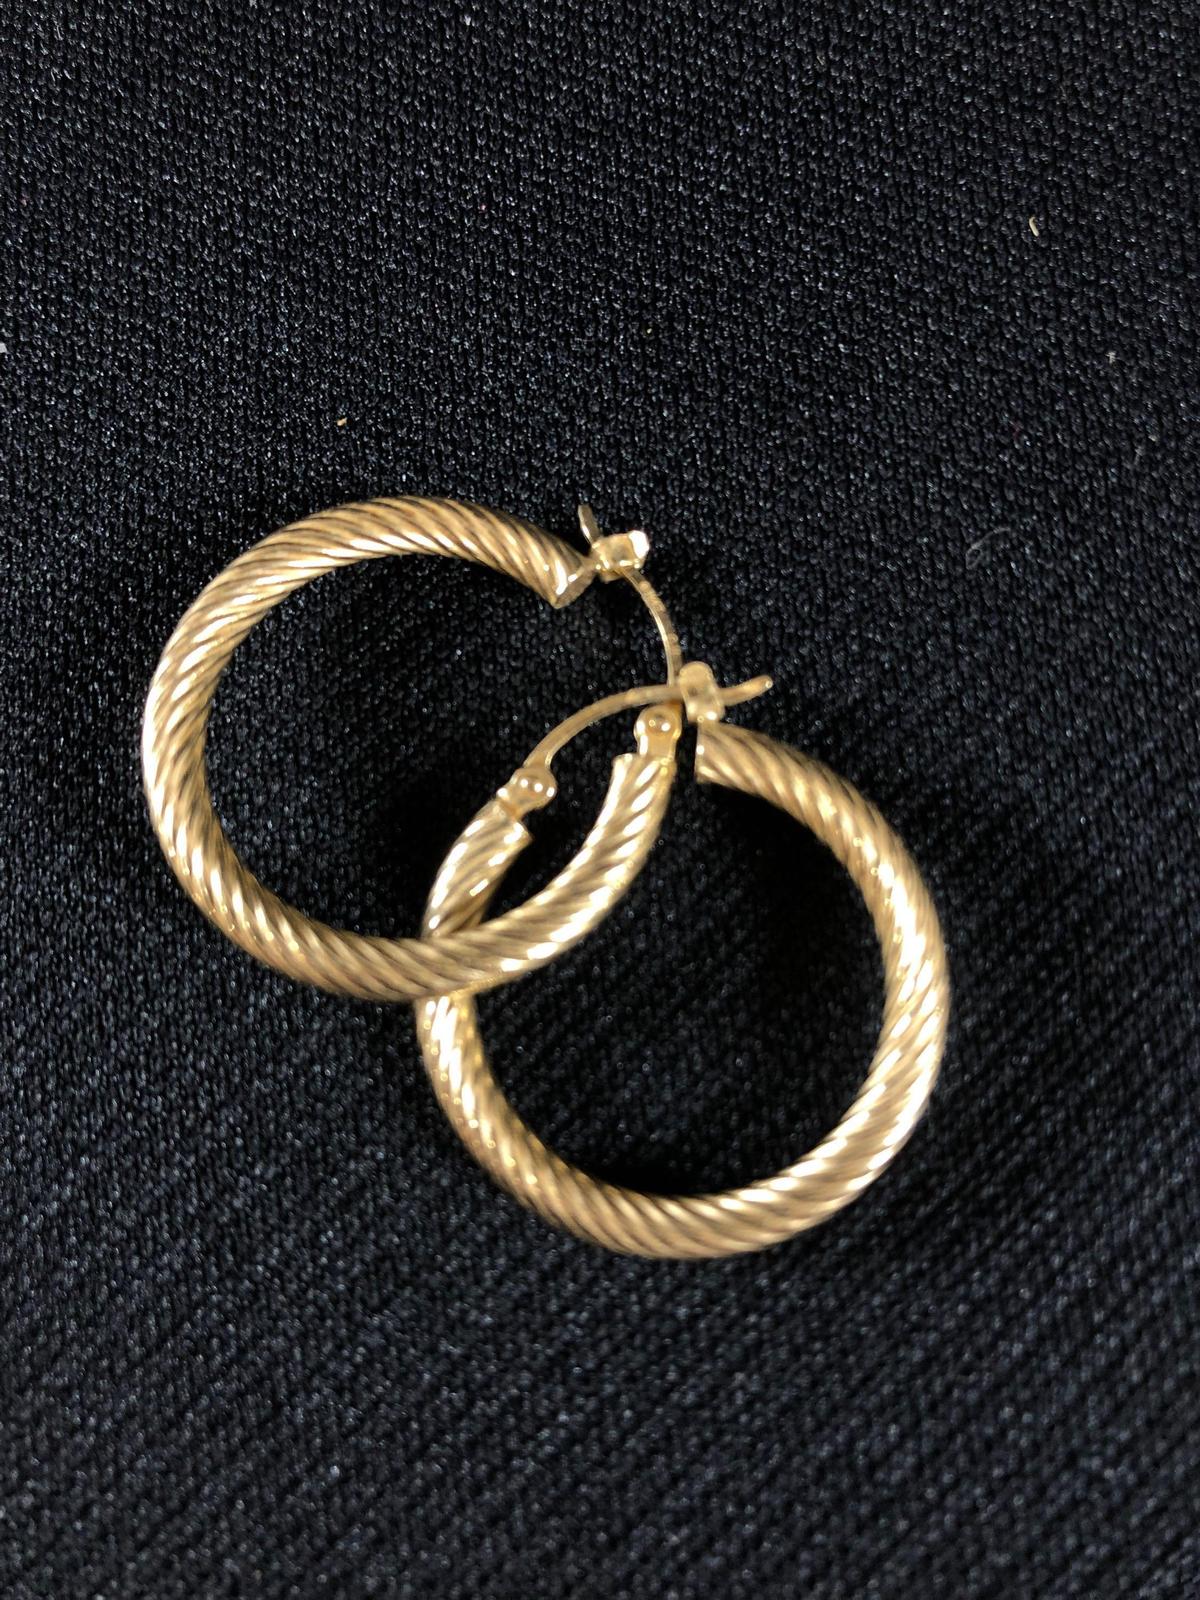 14k Yellow Gold Hoop Earrings 2.1 grams tw